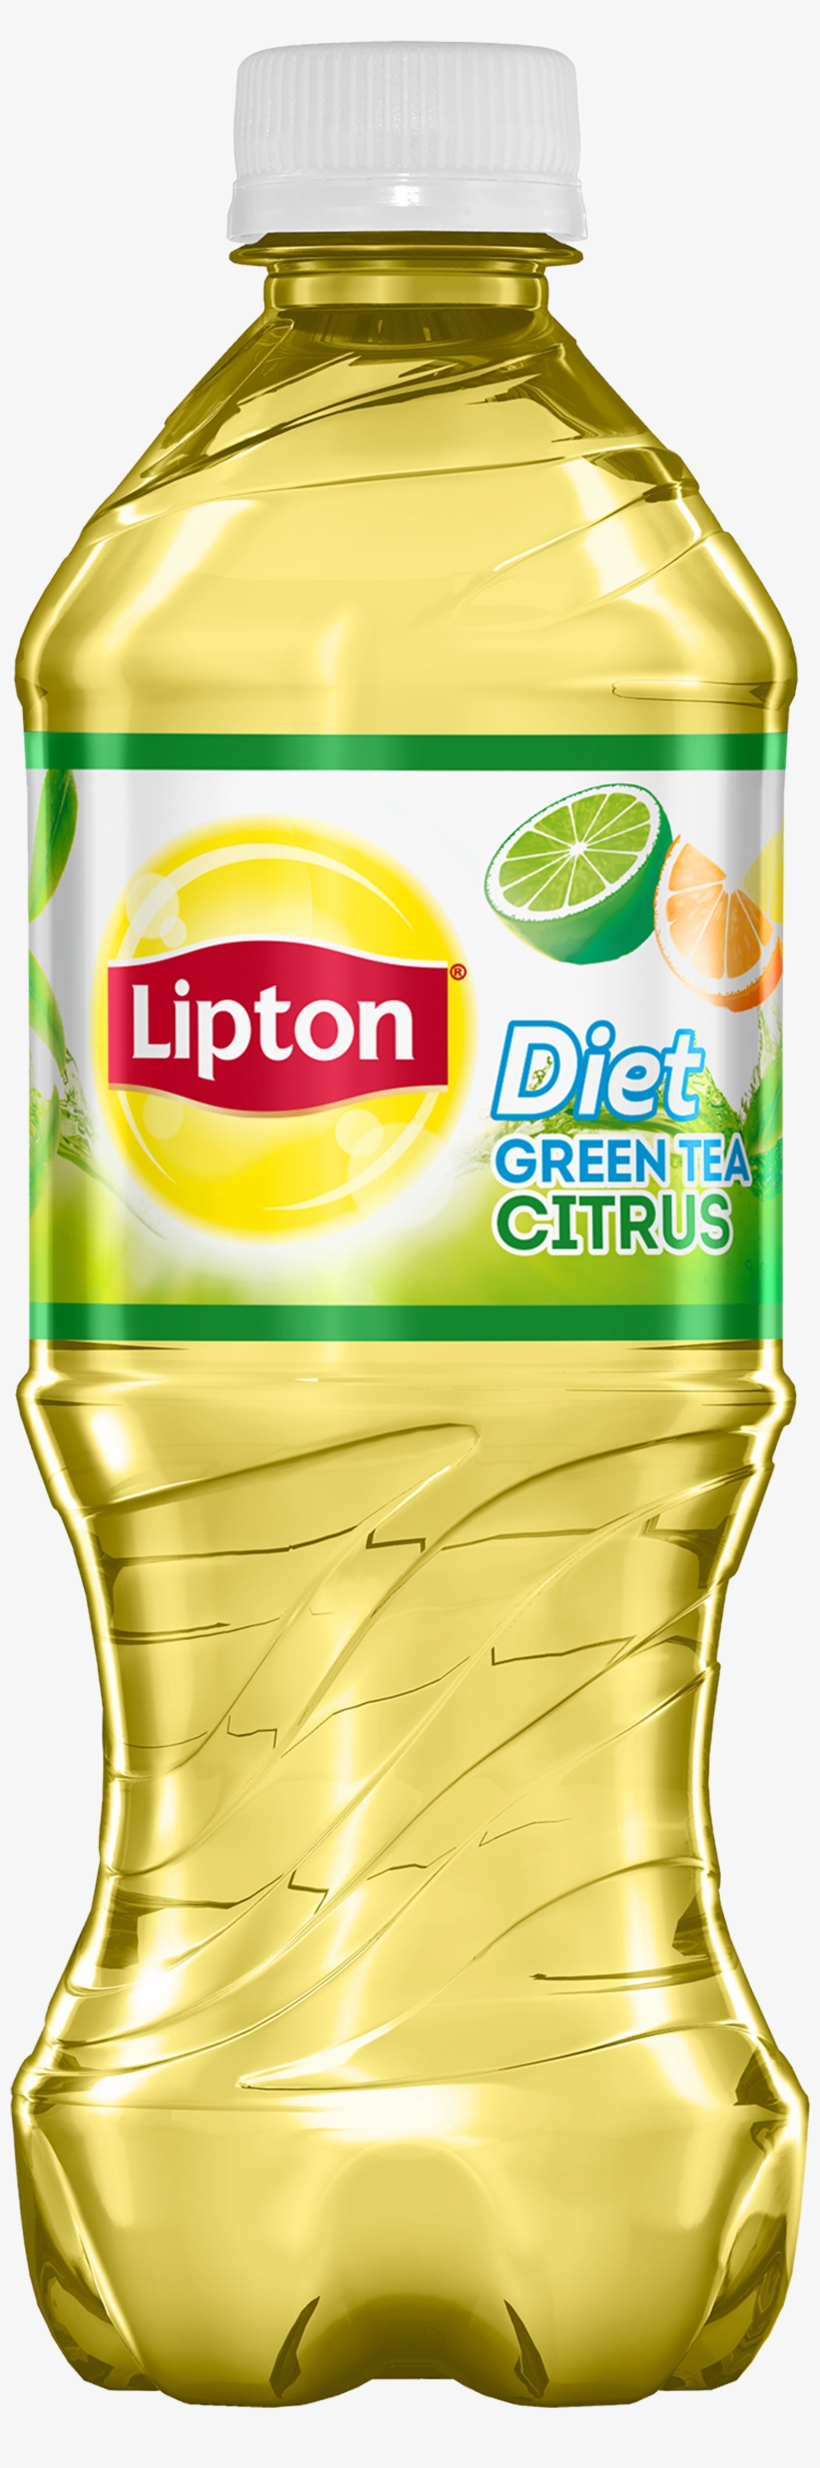 Green Diet Iced Tea Citrus - Lipton Green Tea Bottles, transparent png #187210